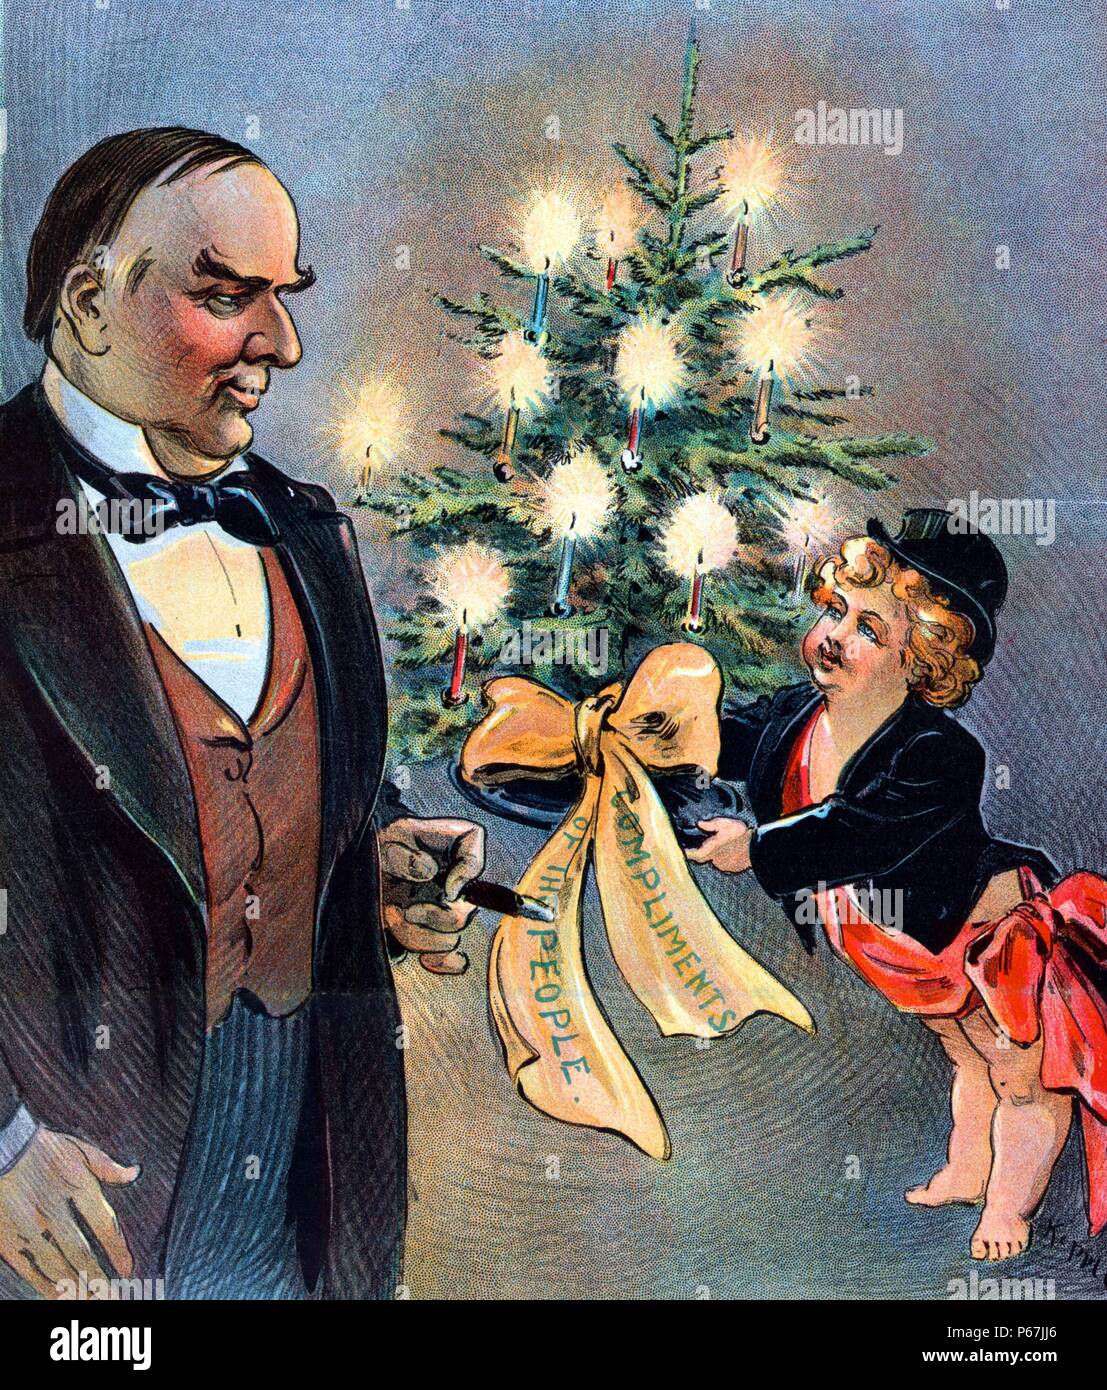 Ein frohes Weihnachtsfest! " Puck bietet einen kleinen Weihnachtsbaum mit Band unter Angabe "Komplimente des Volkes" Präsident McKinley. Stockfoto